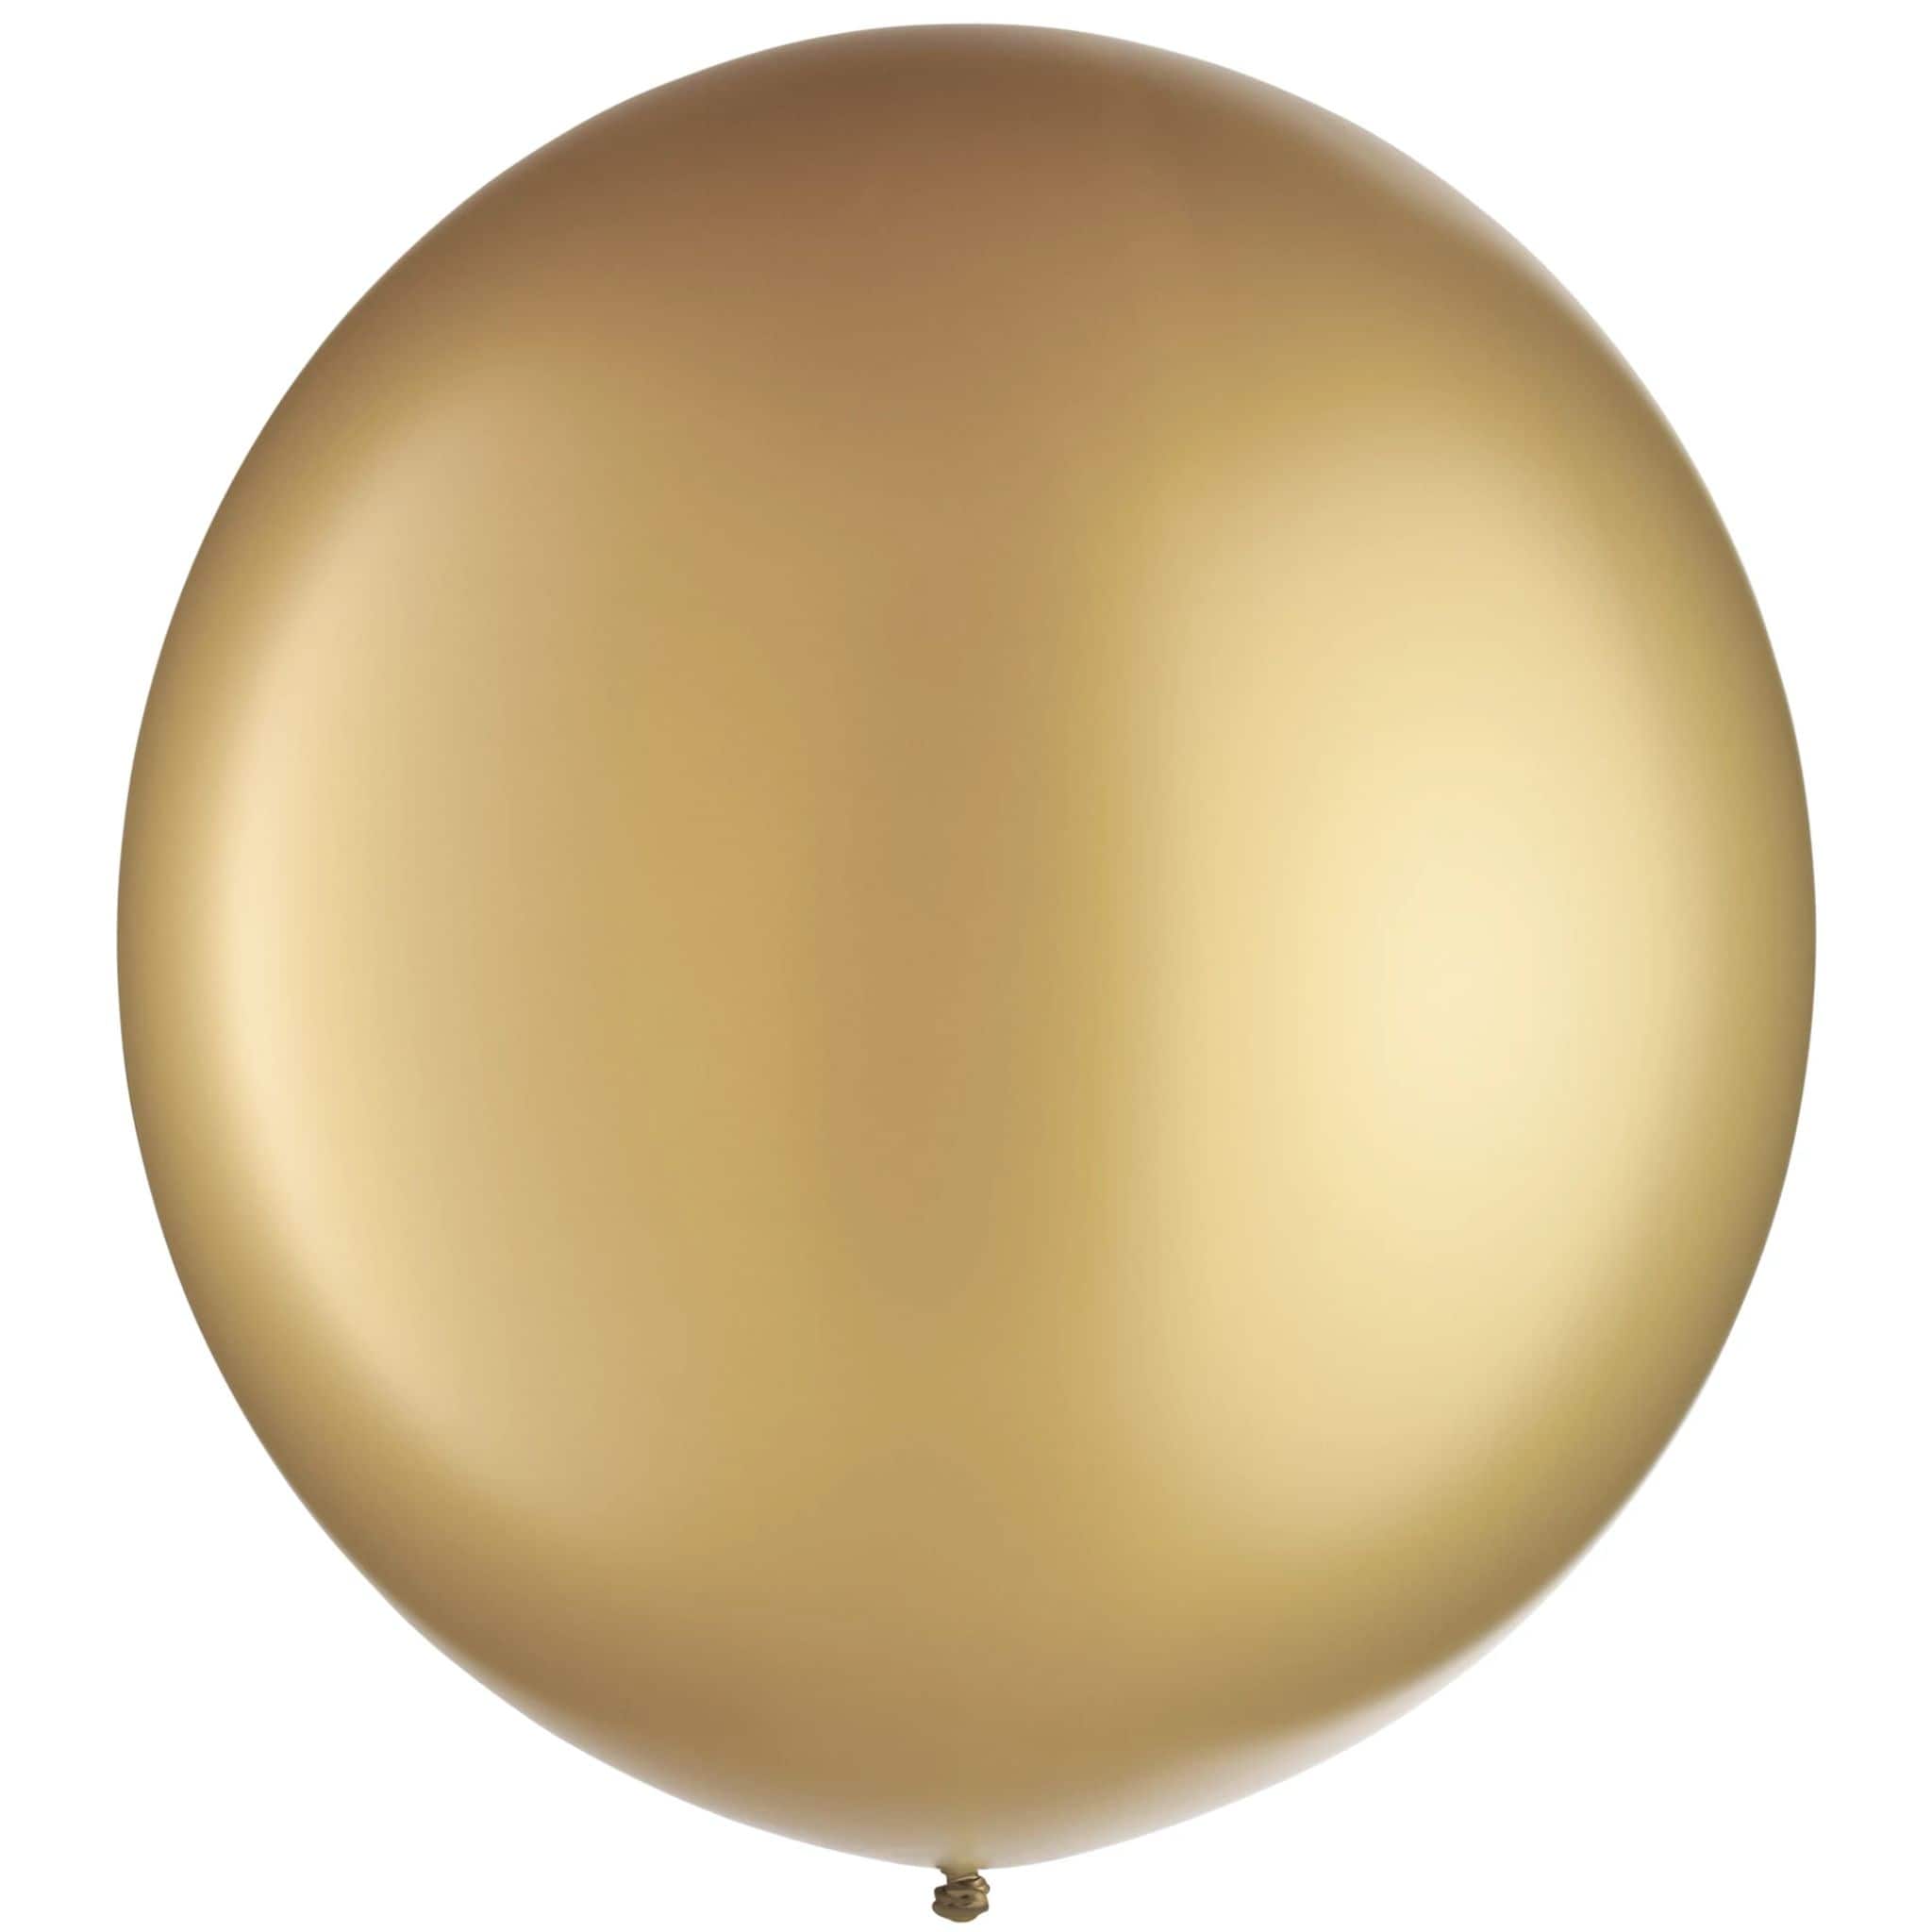 Round Latex Balloons, 4ct.